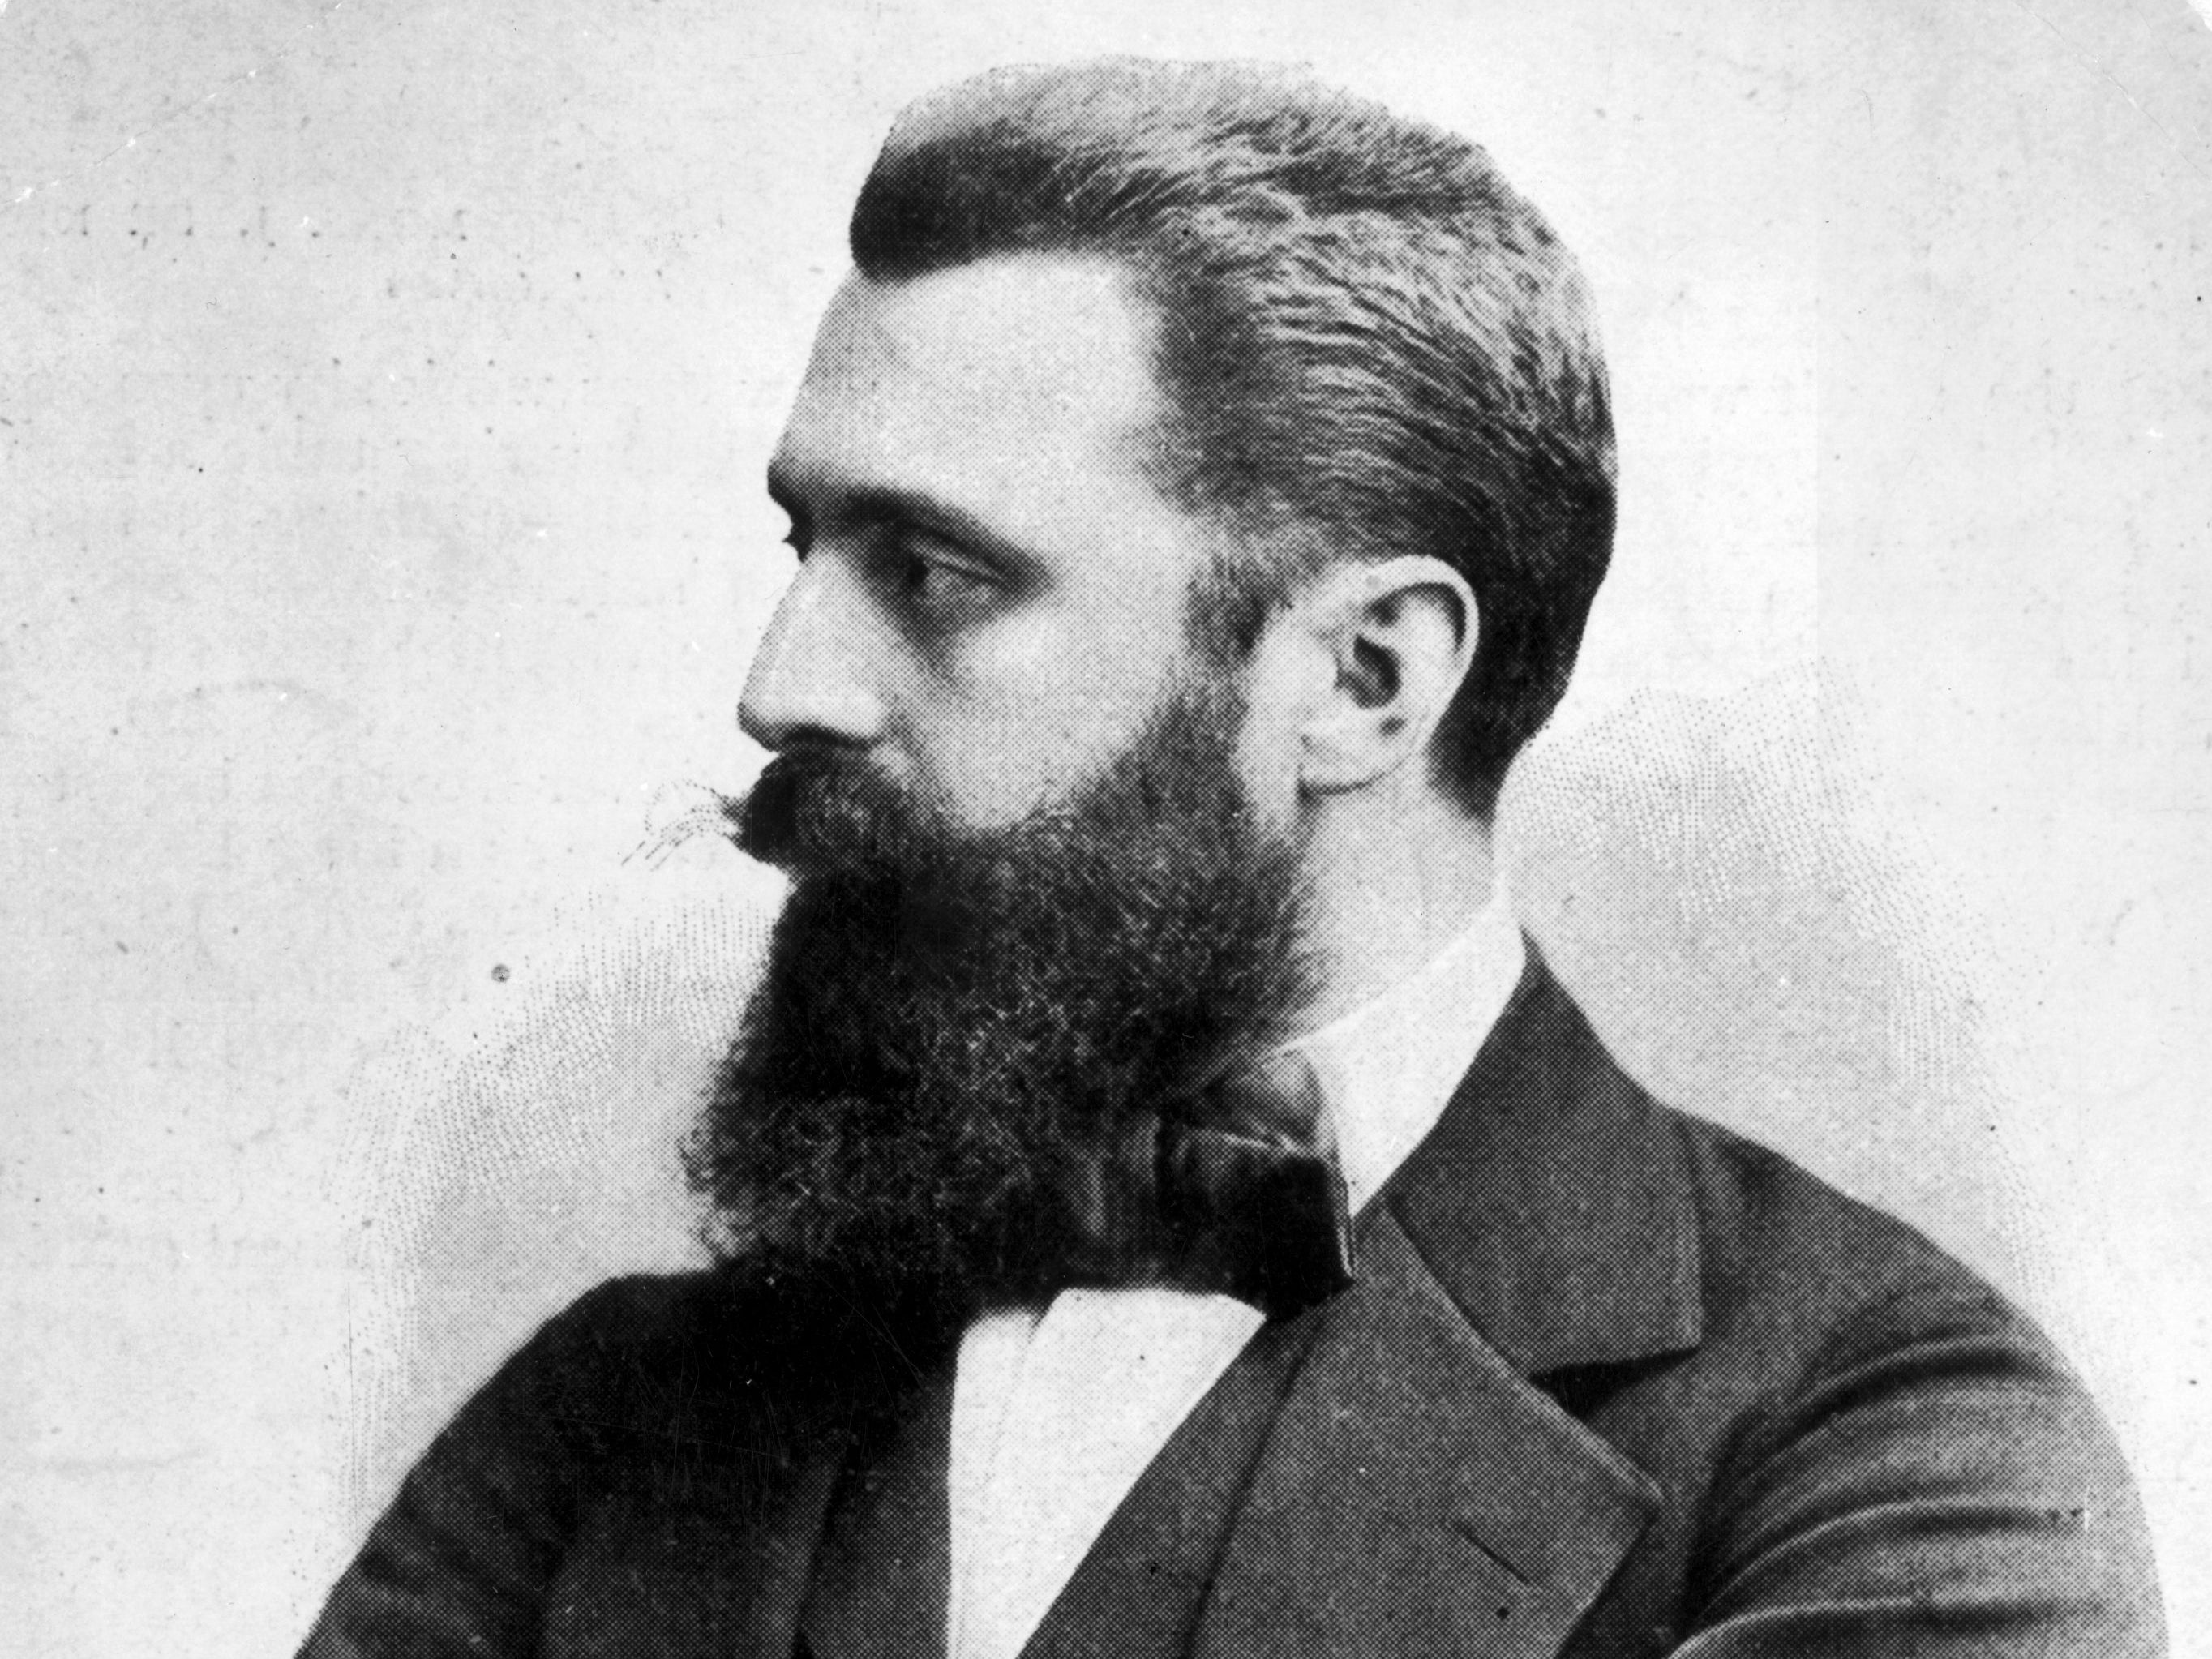 El periodista y escritor Theodor Herzl, quien fundó el movimiento político sionista moderno